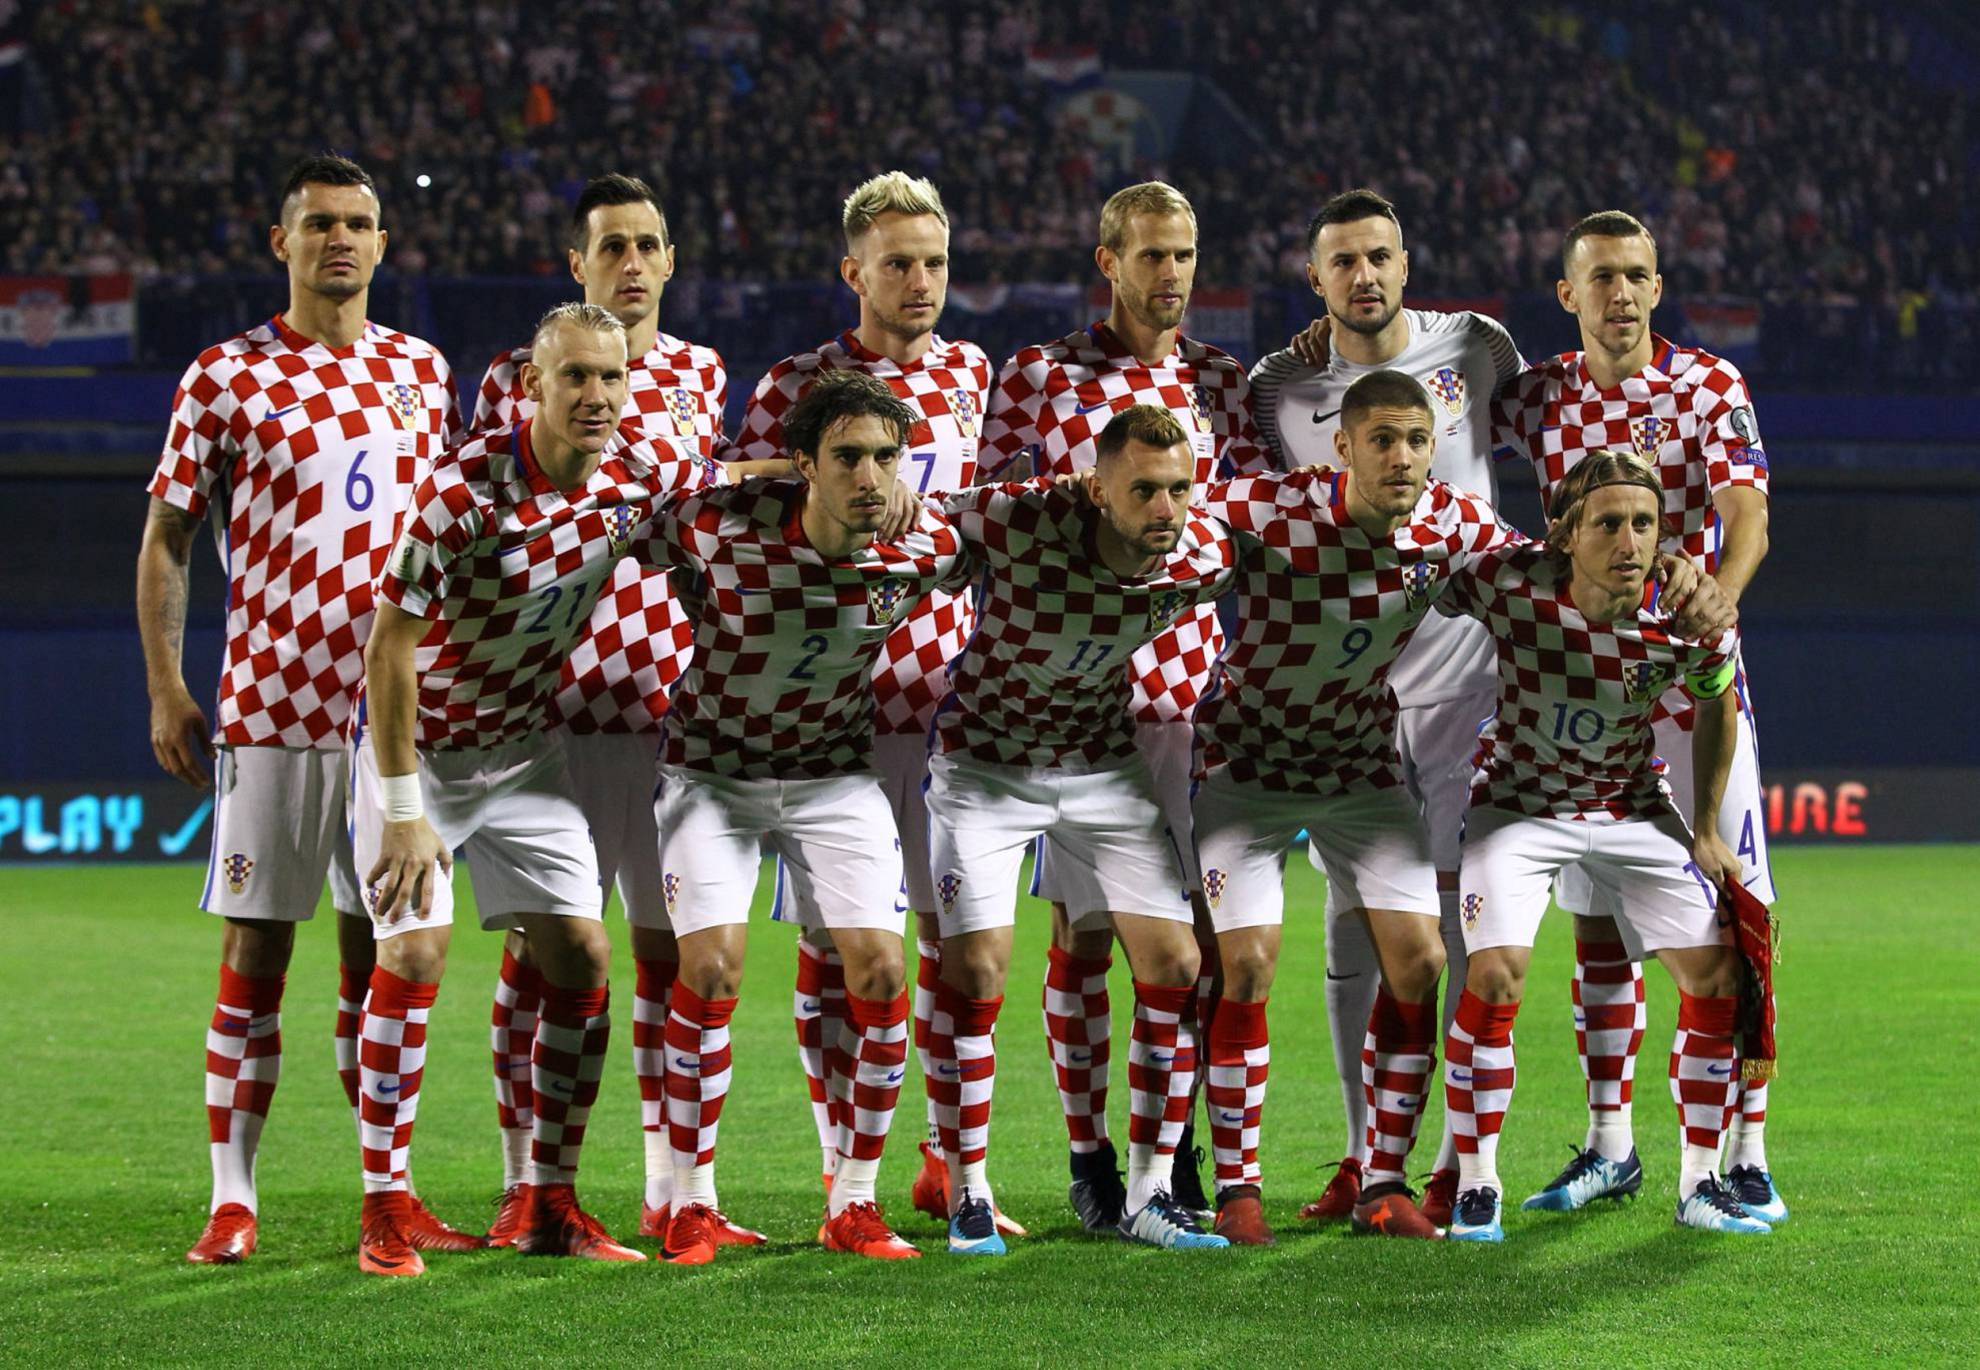 Jugadores de selección de fútbol de croacia